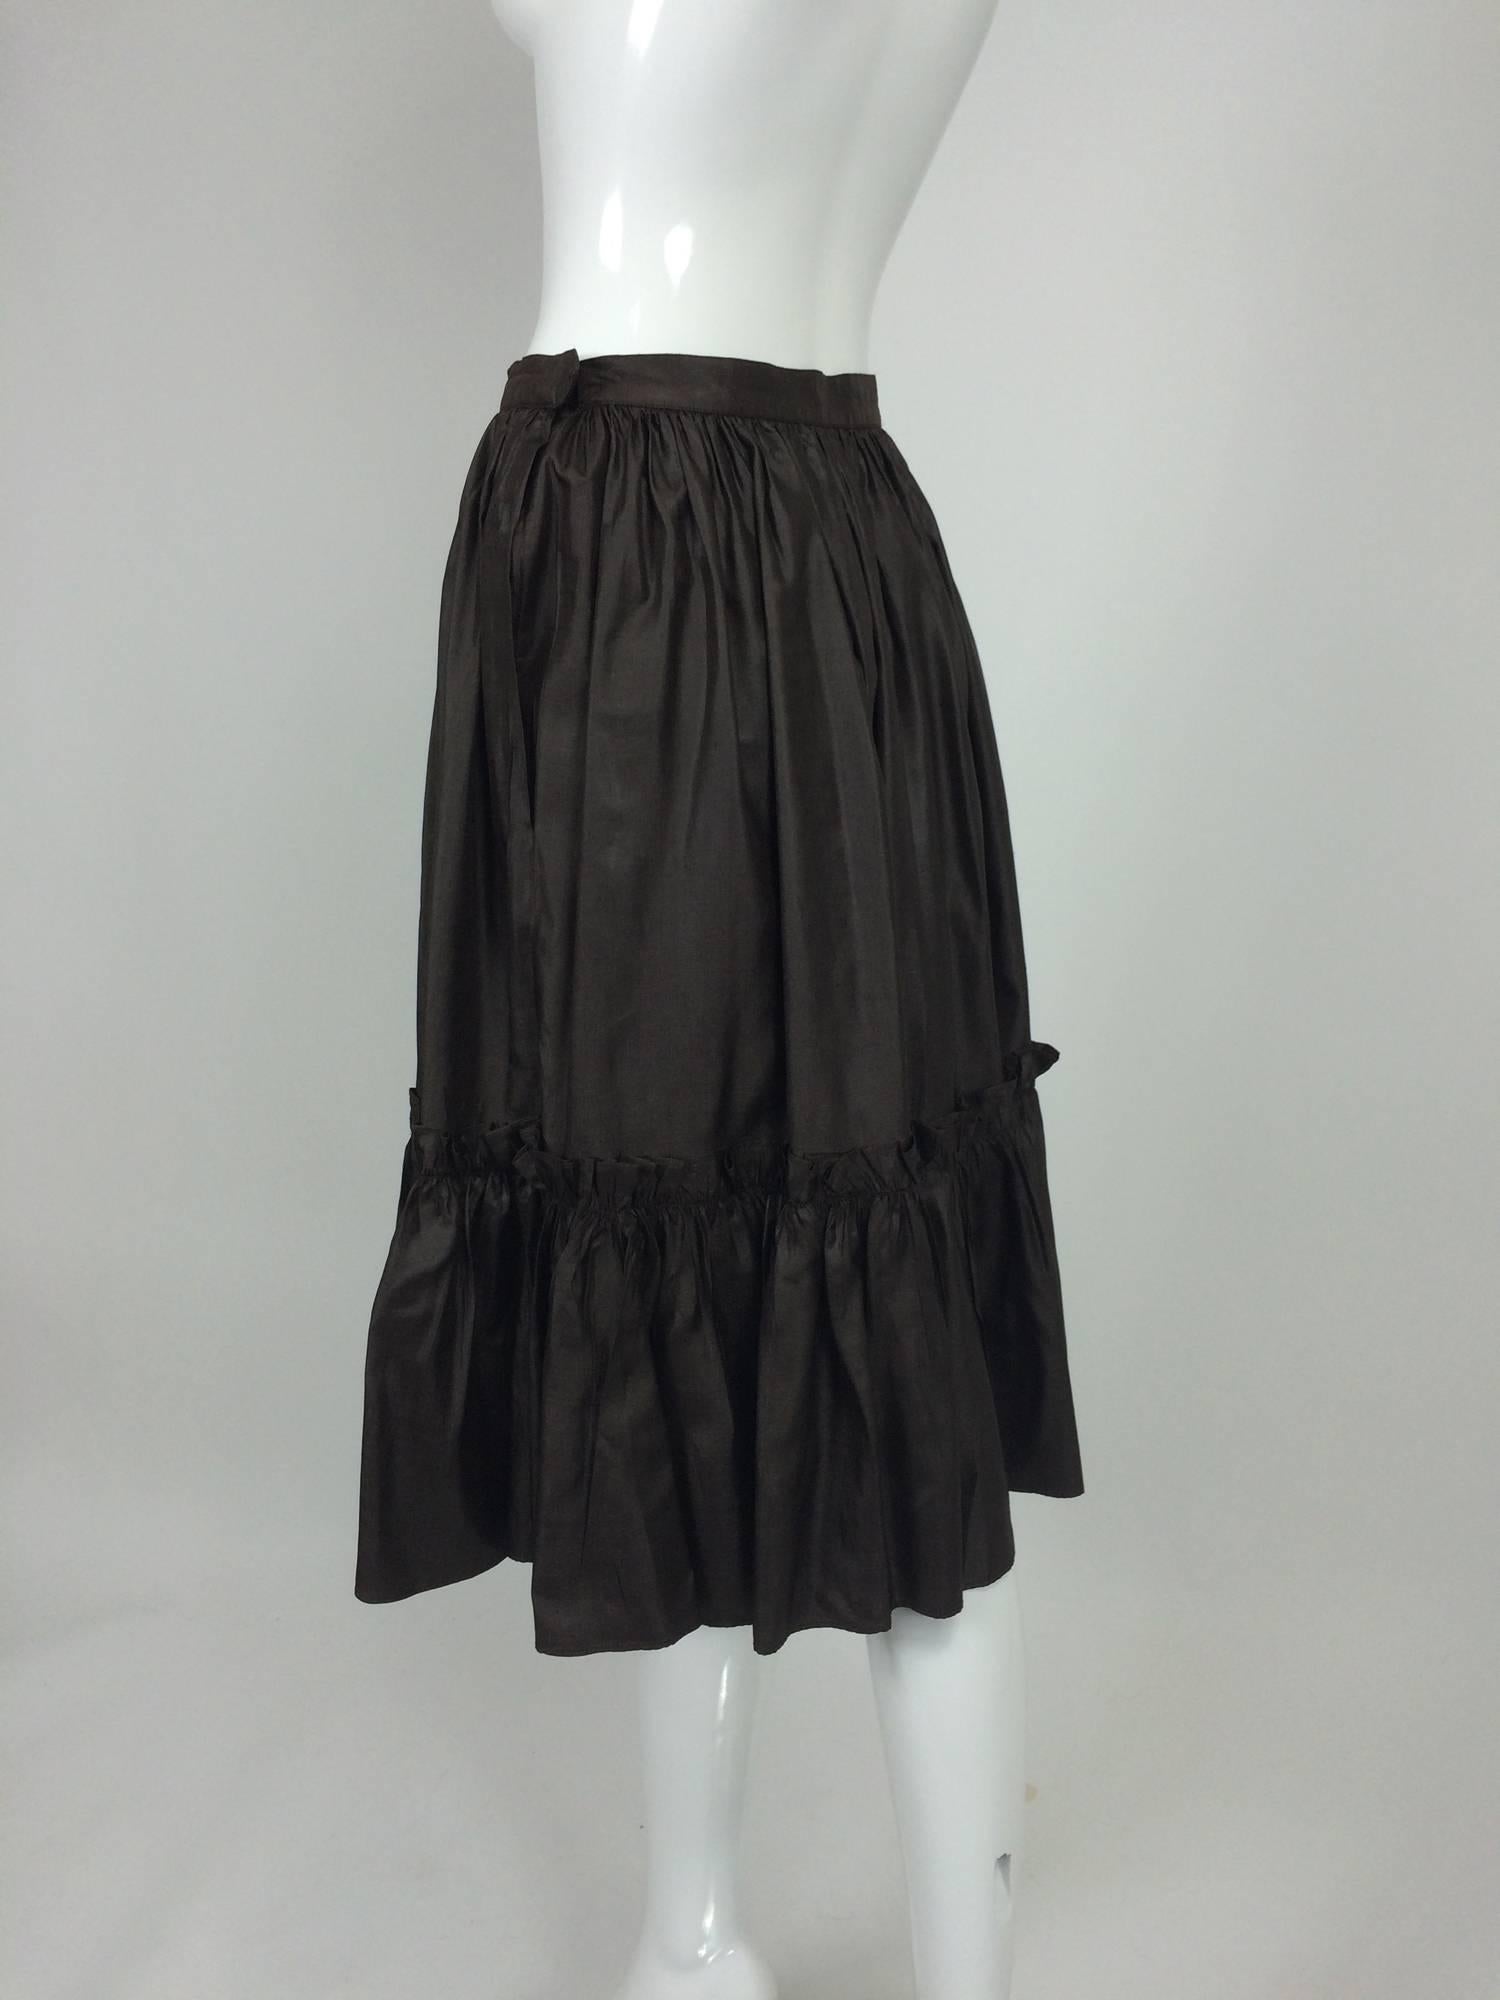 Black Yves St Laurent Rive gauche Chocolate Brown silk ruffle hem skirt 1970s